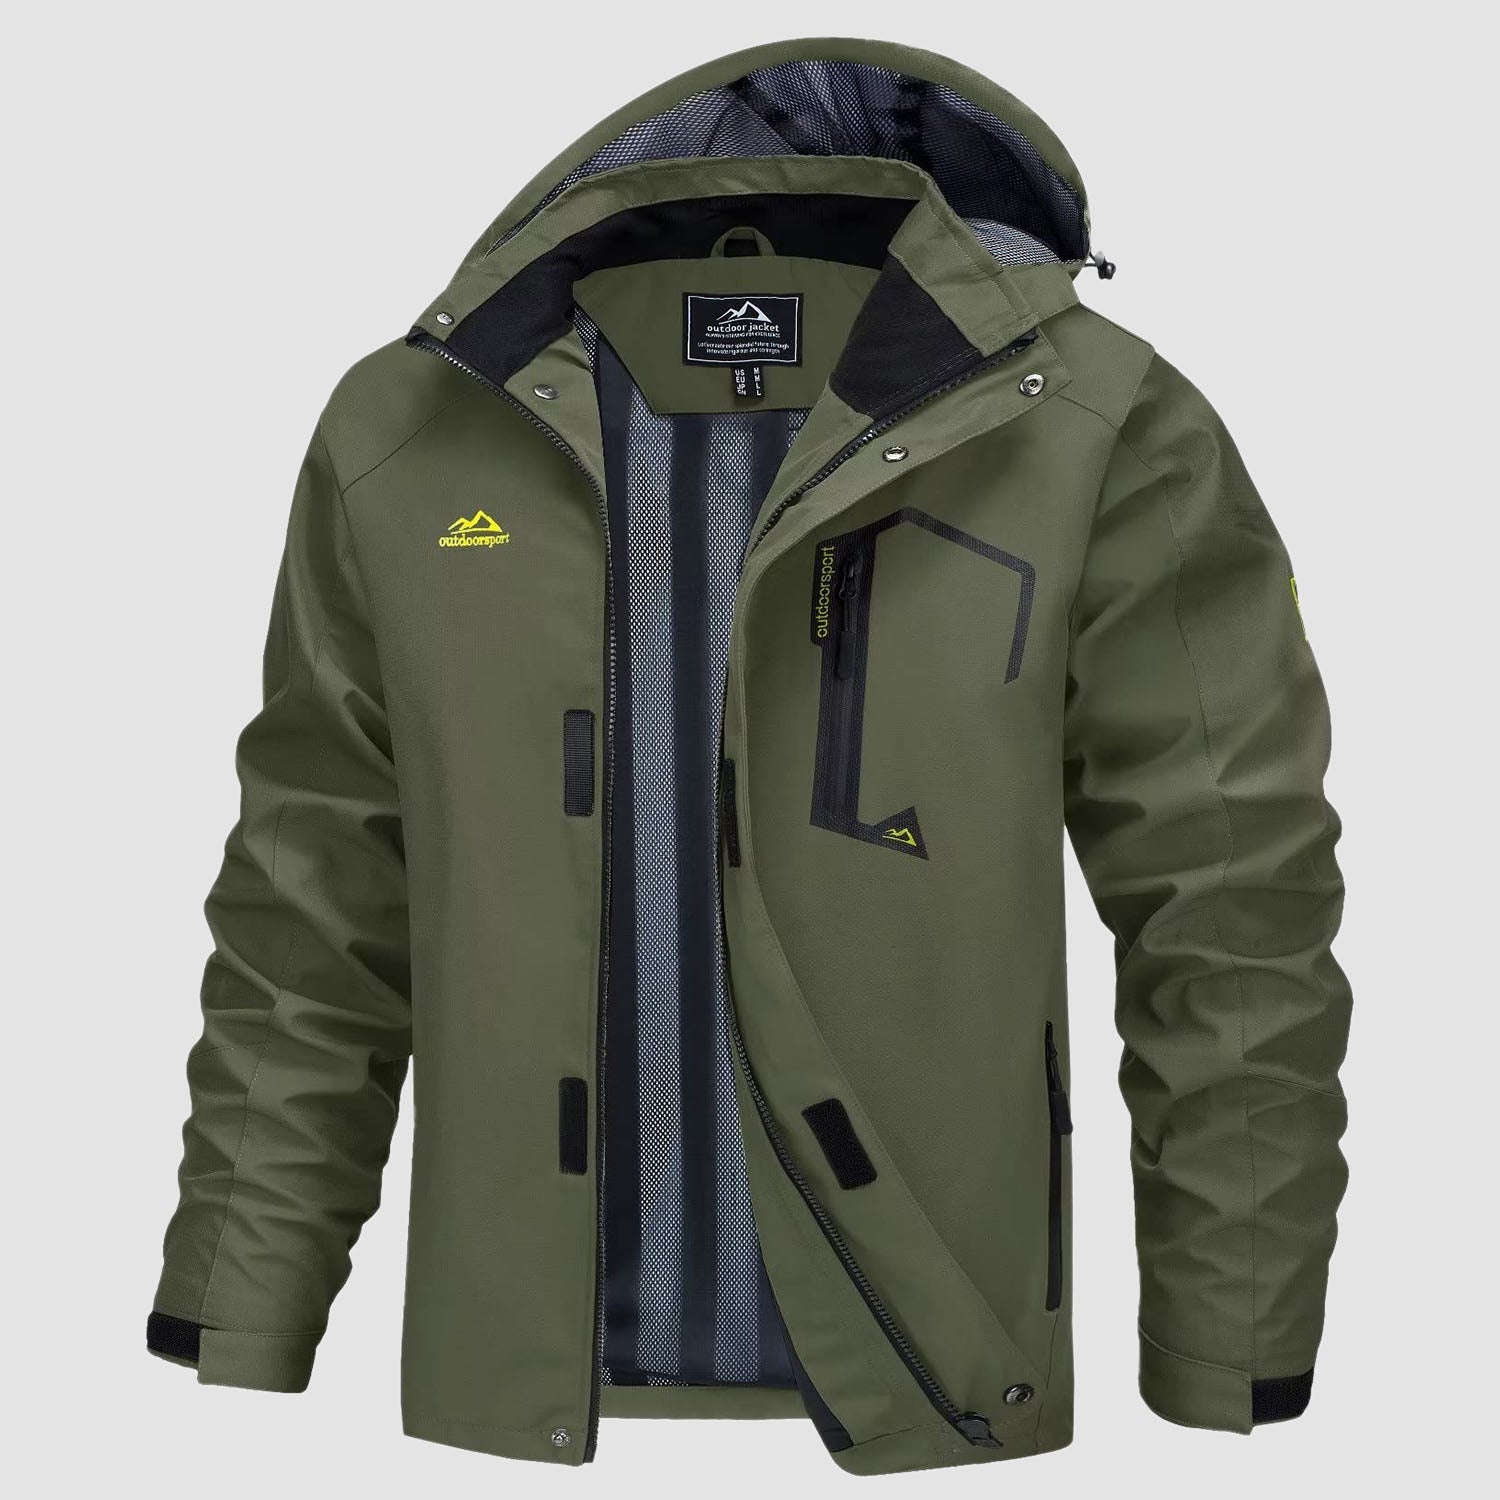 Men's Jacket Water Resistant Windbreaker Coat for Outdoor, Army Green / S